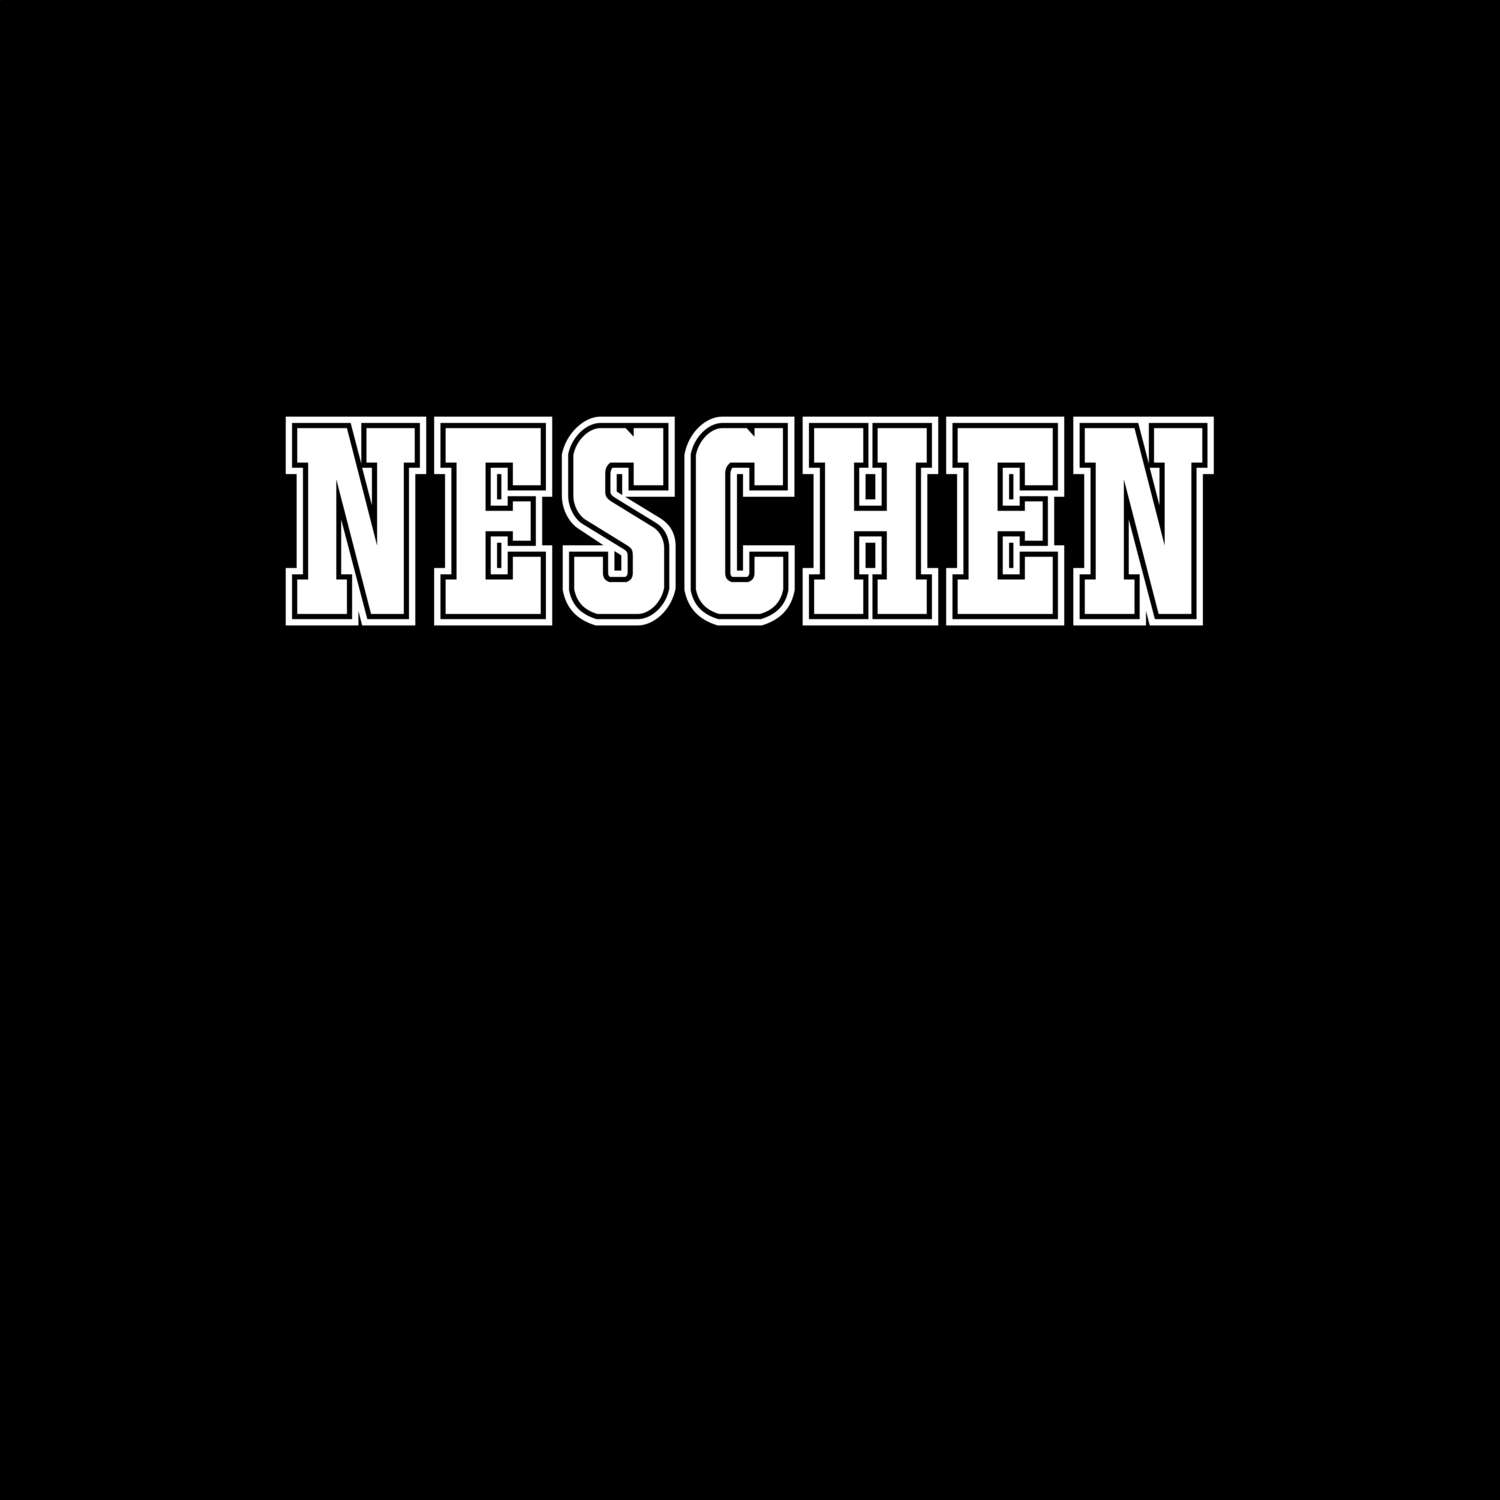 Neschen T-Shirt »Classic«